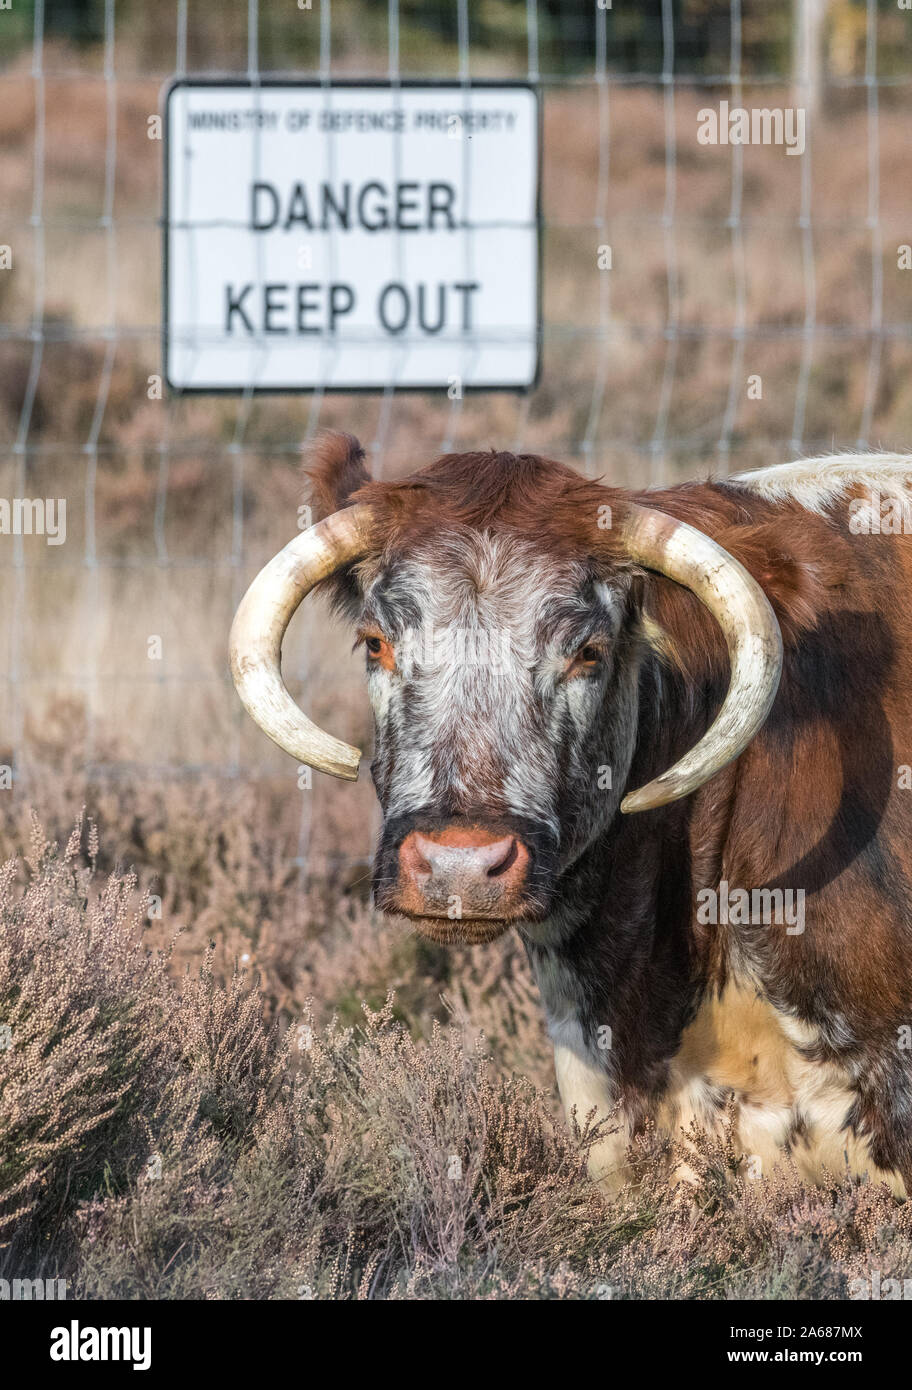 Anglais femelle alimentation Longhorn dans une clairière landes avec un panneau de danger dans l'arrière-plan. Banque D'Images